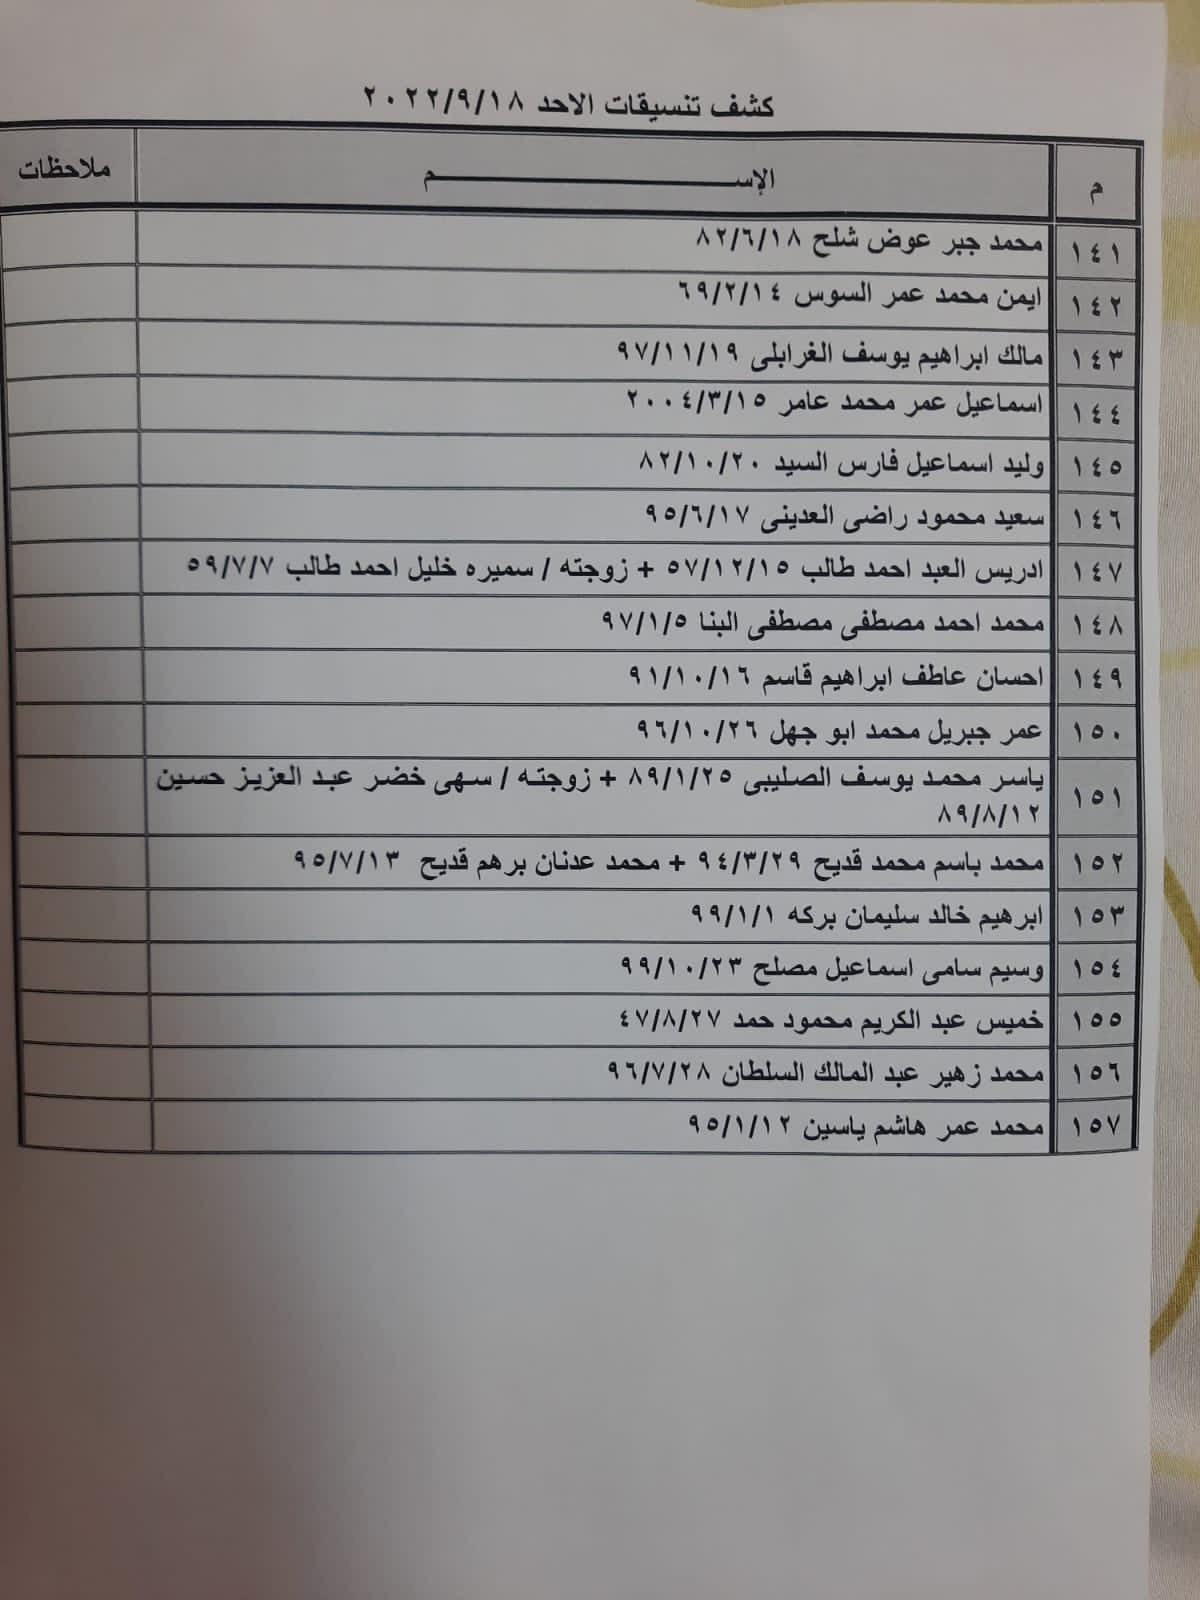 بالأسماء: كشف "التنسيقات المصرية" للسفر عبر معبر رفح الأحد 16 أكتوبر 2022